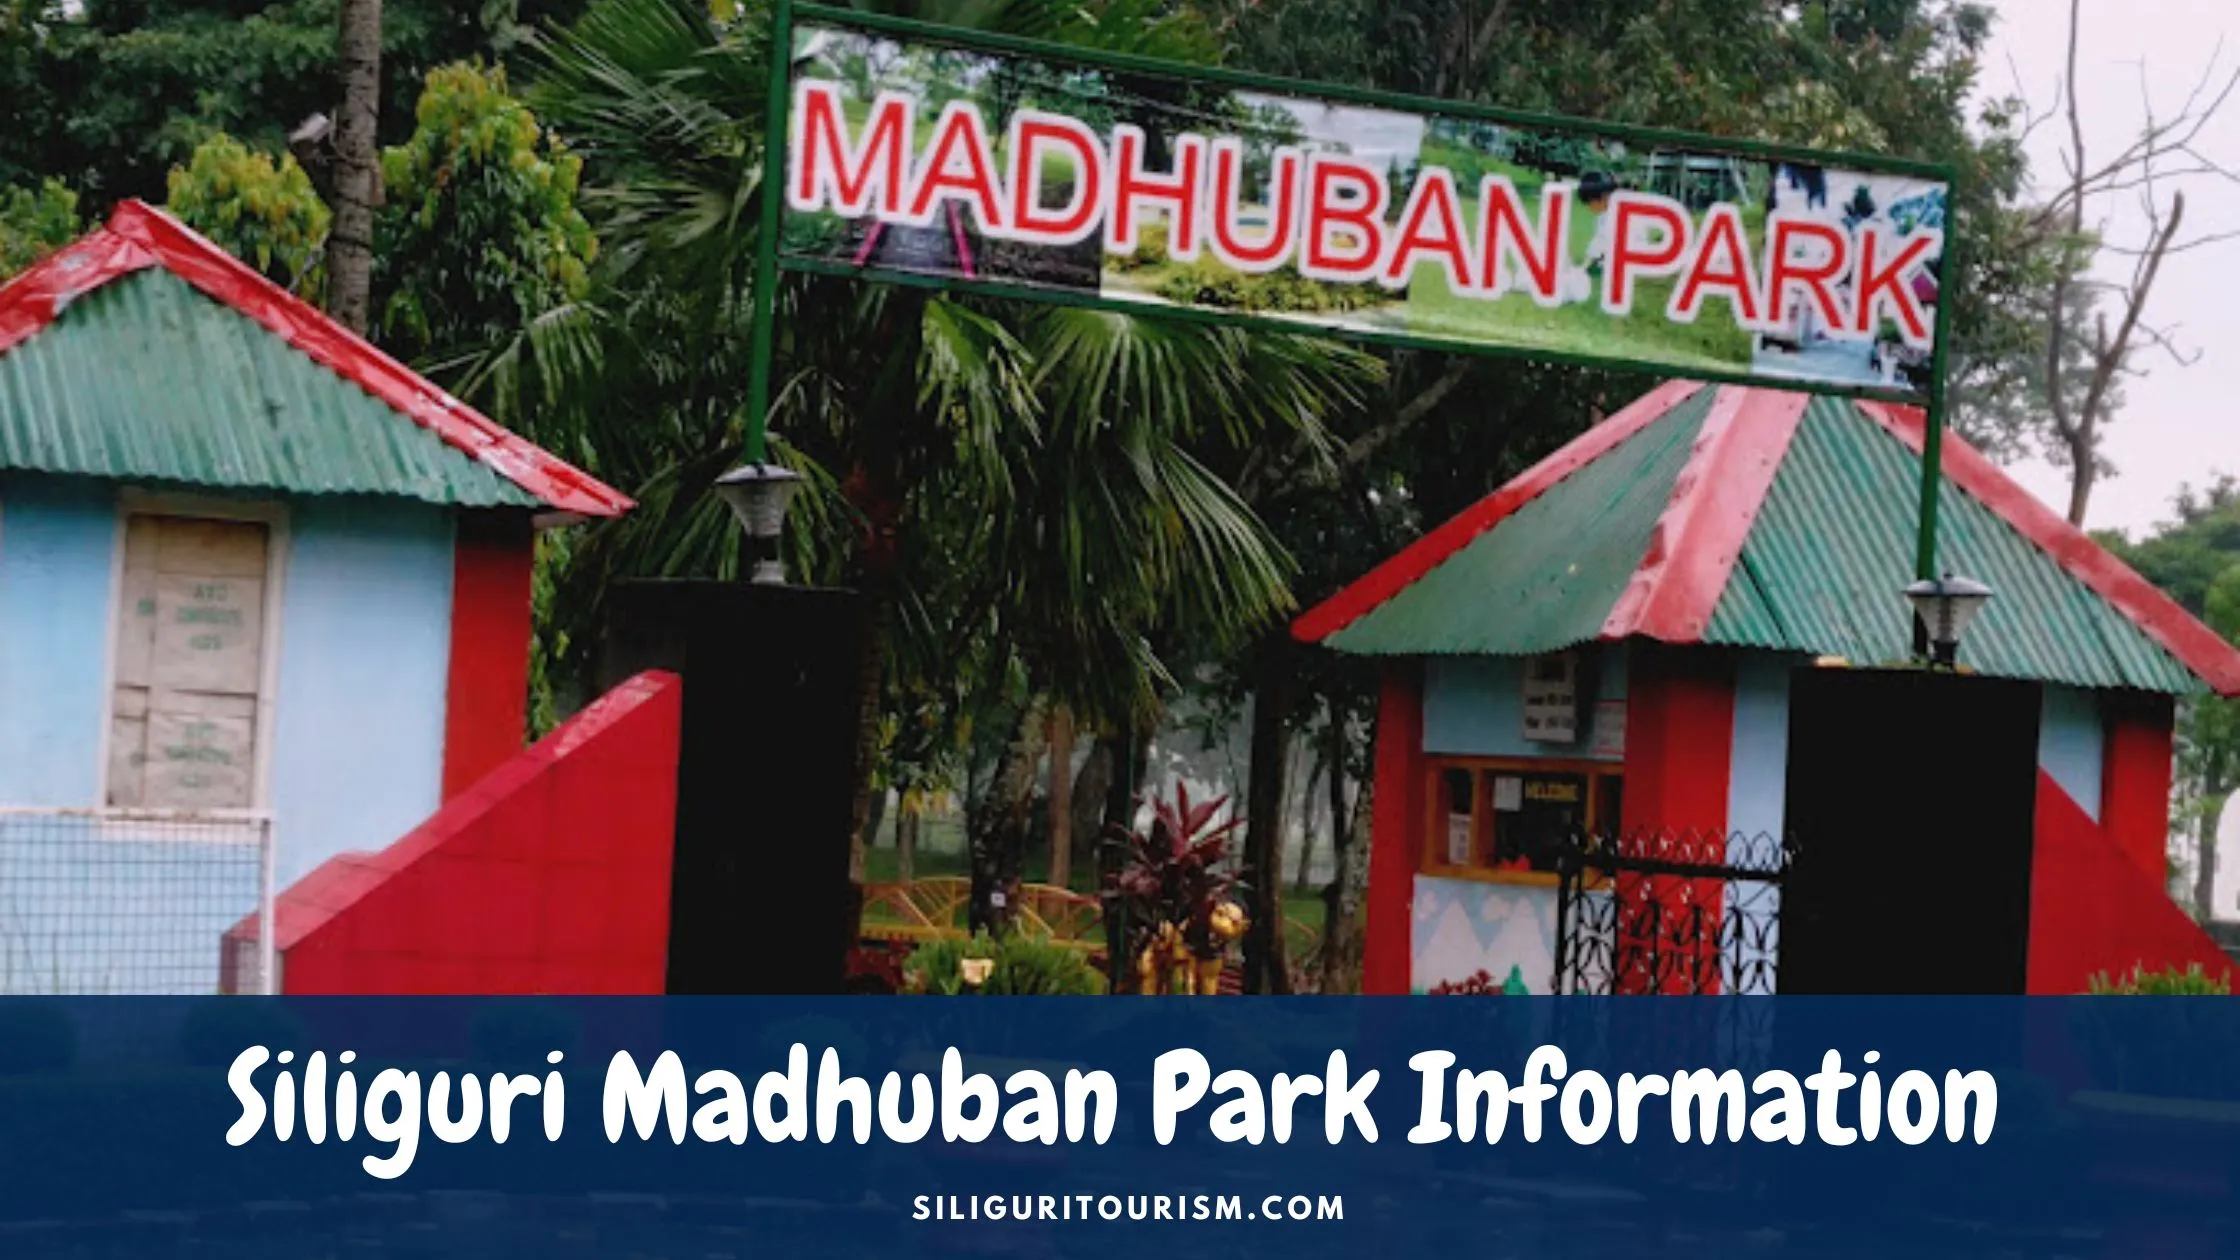 Siliguri Madhuban Park